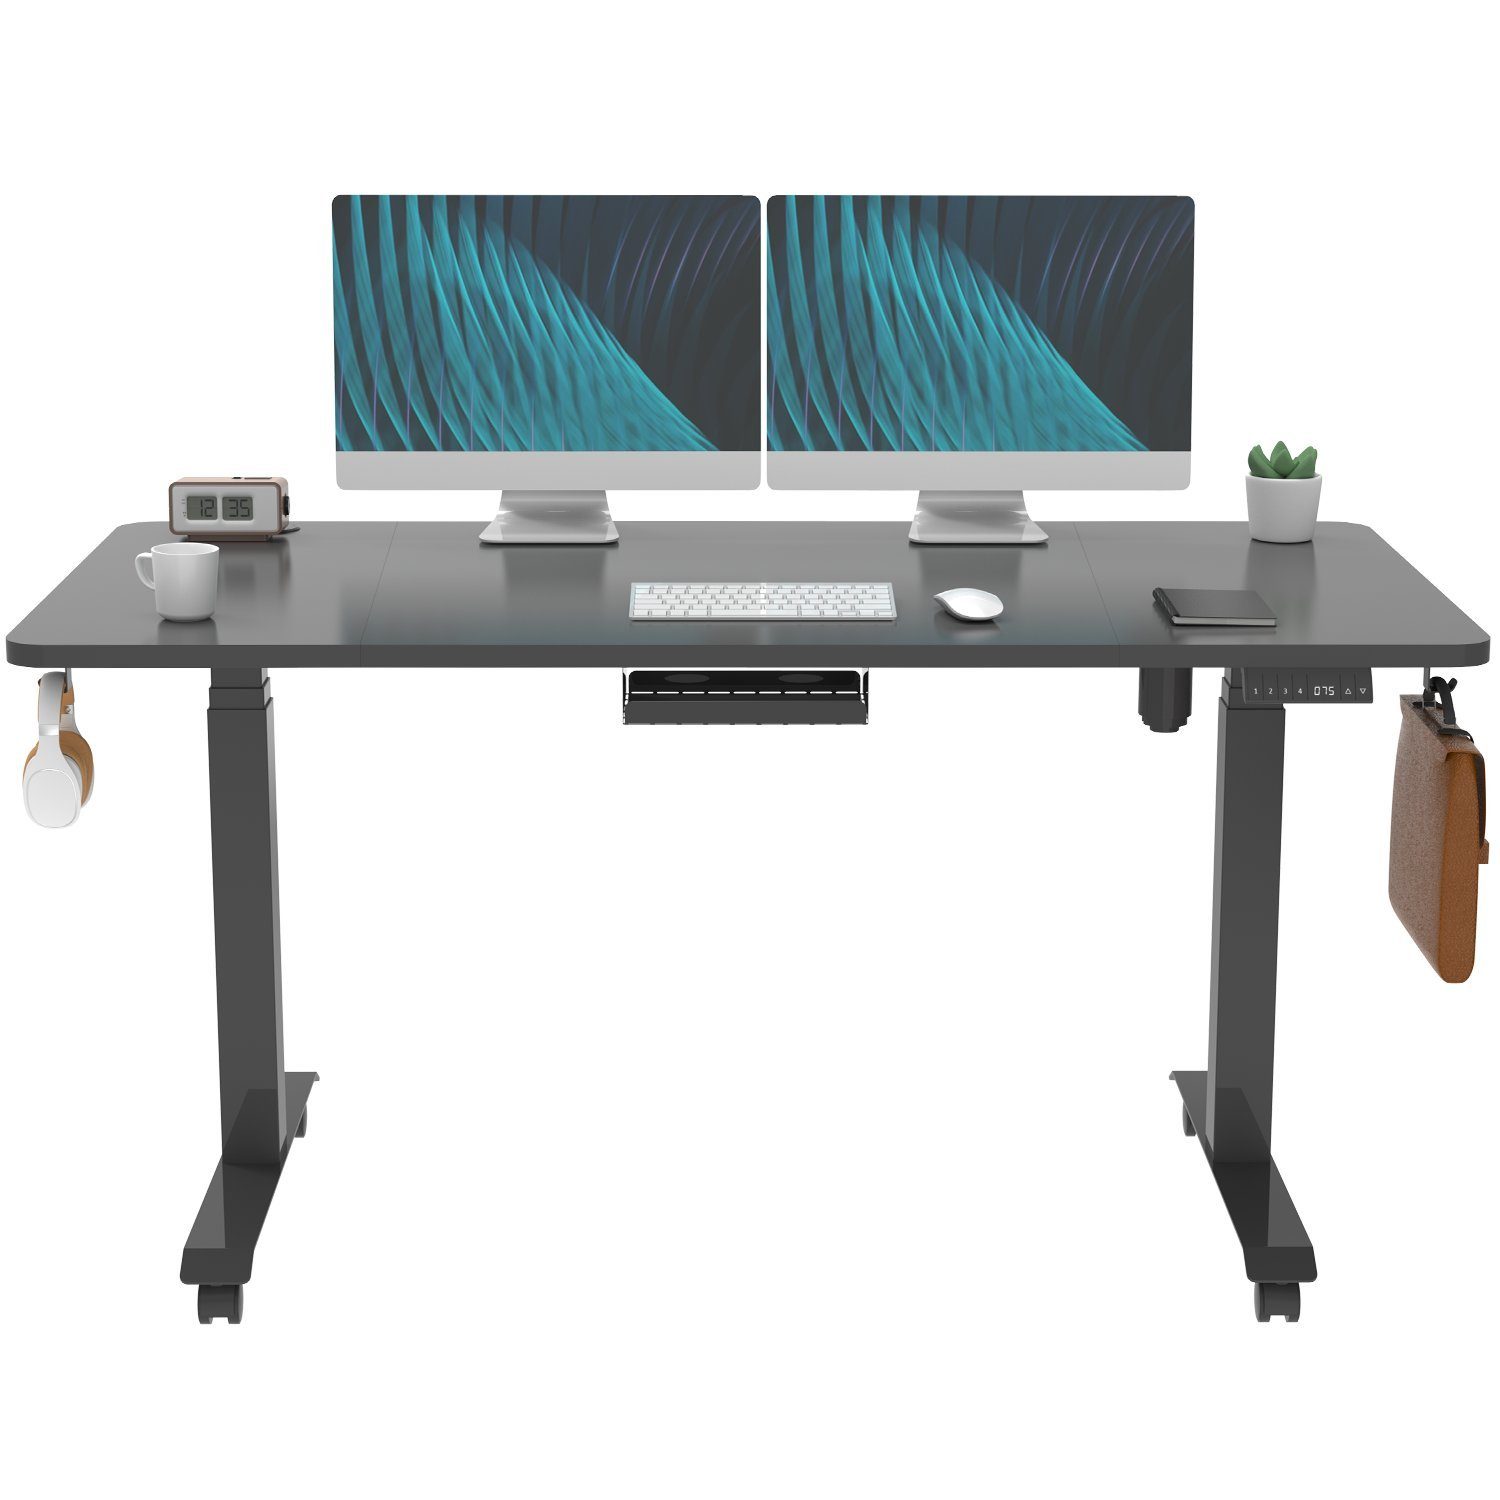 HOMALL Schreibtisch Höhenverstellbar Schwarz tisch Ergonomisch Elektrisch 160/180cm